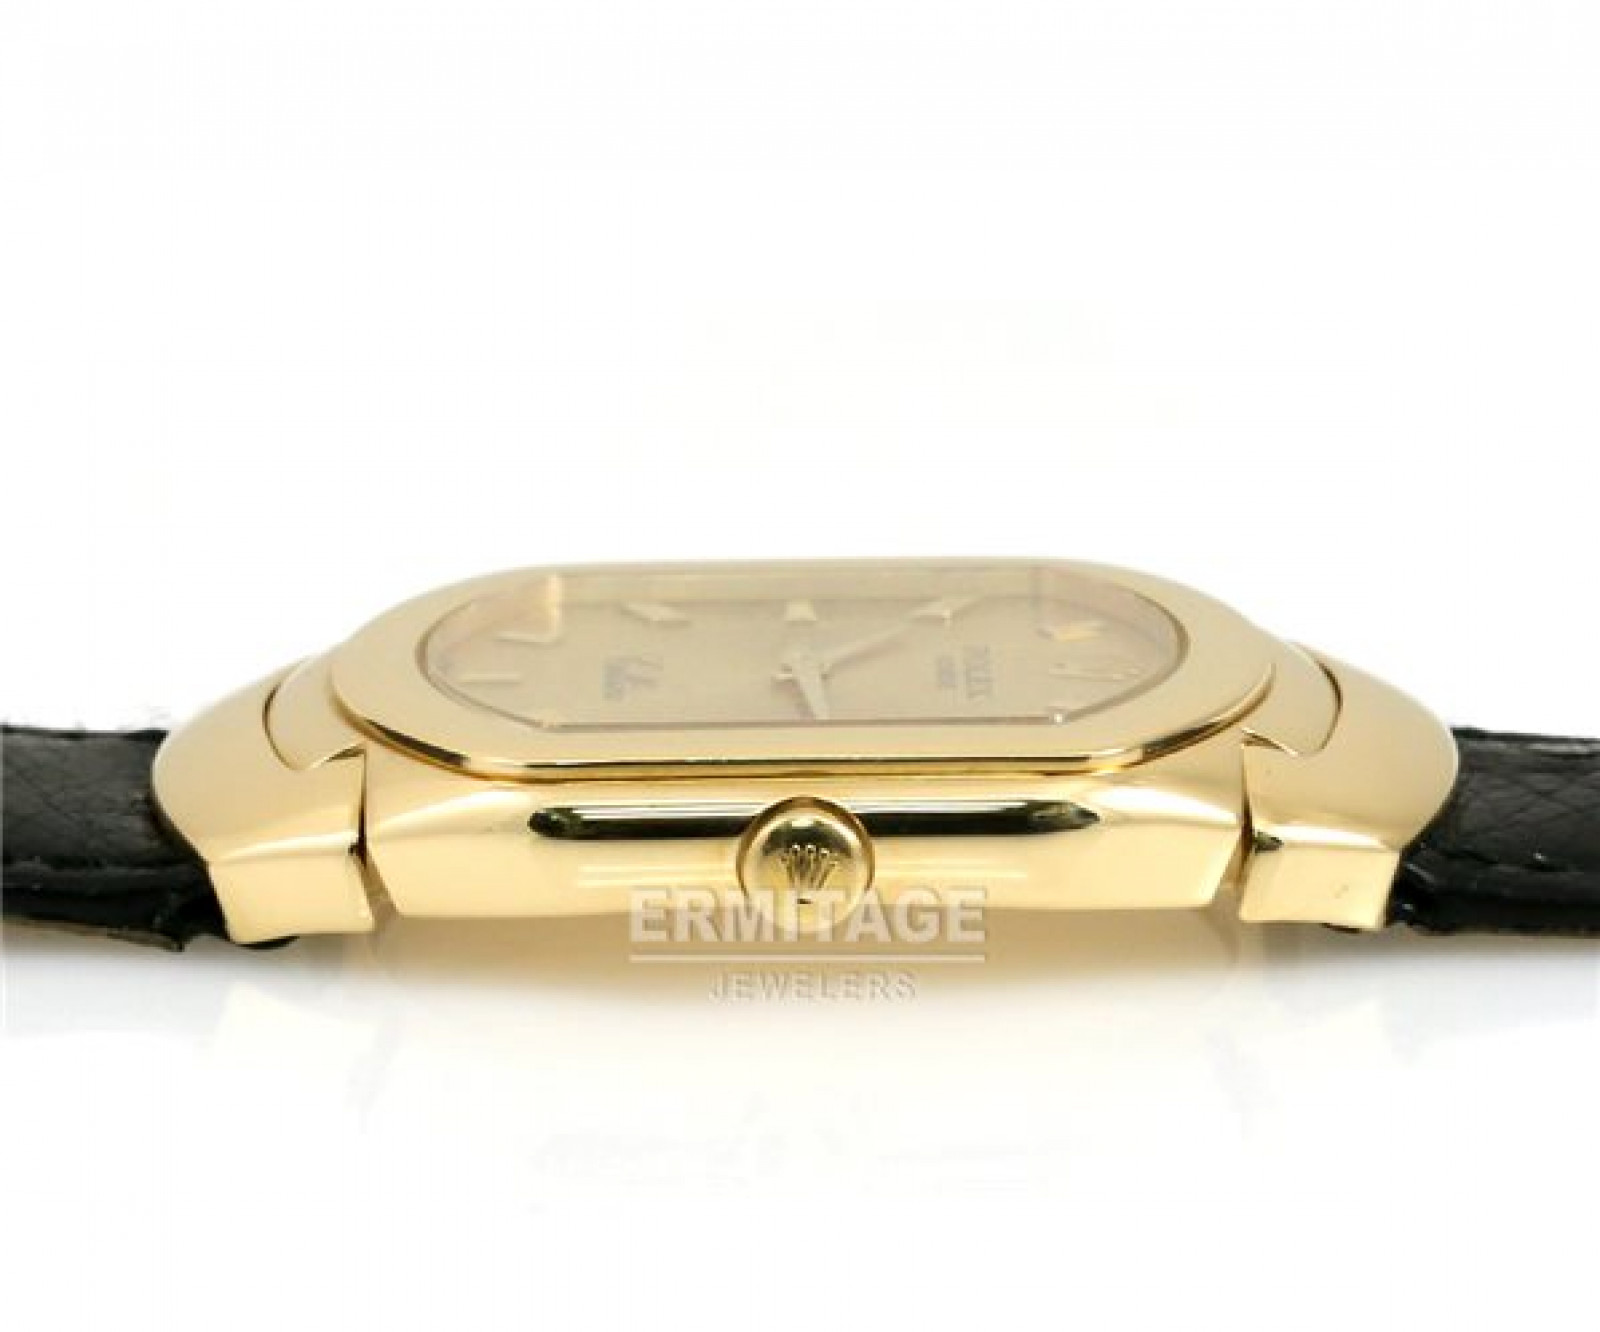 Rolex Cellini 6633 Gold 1992